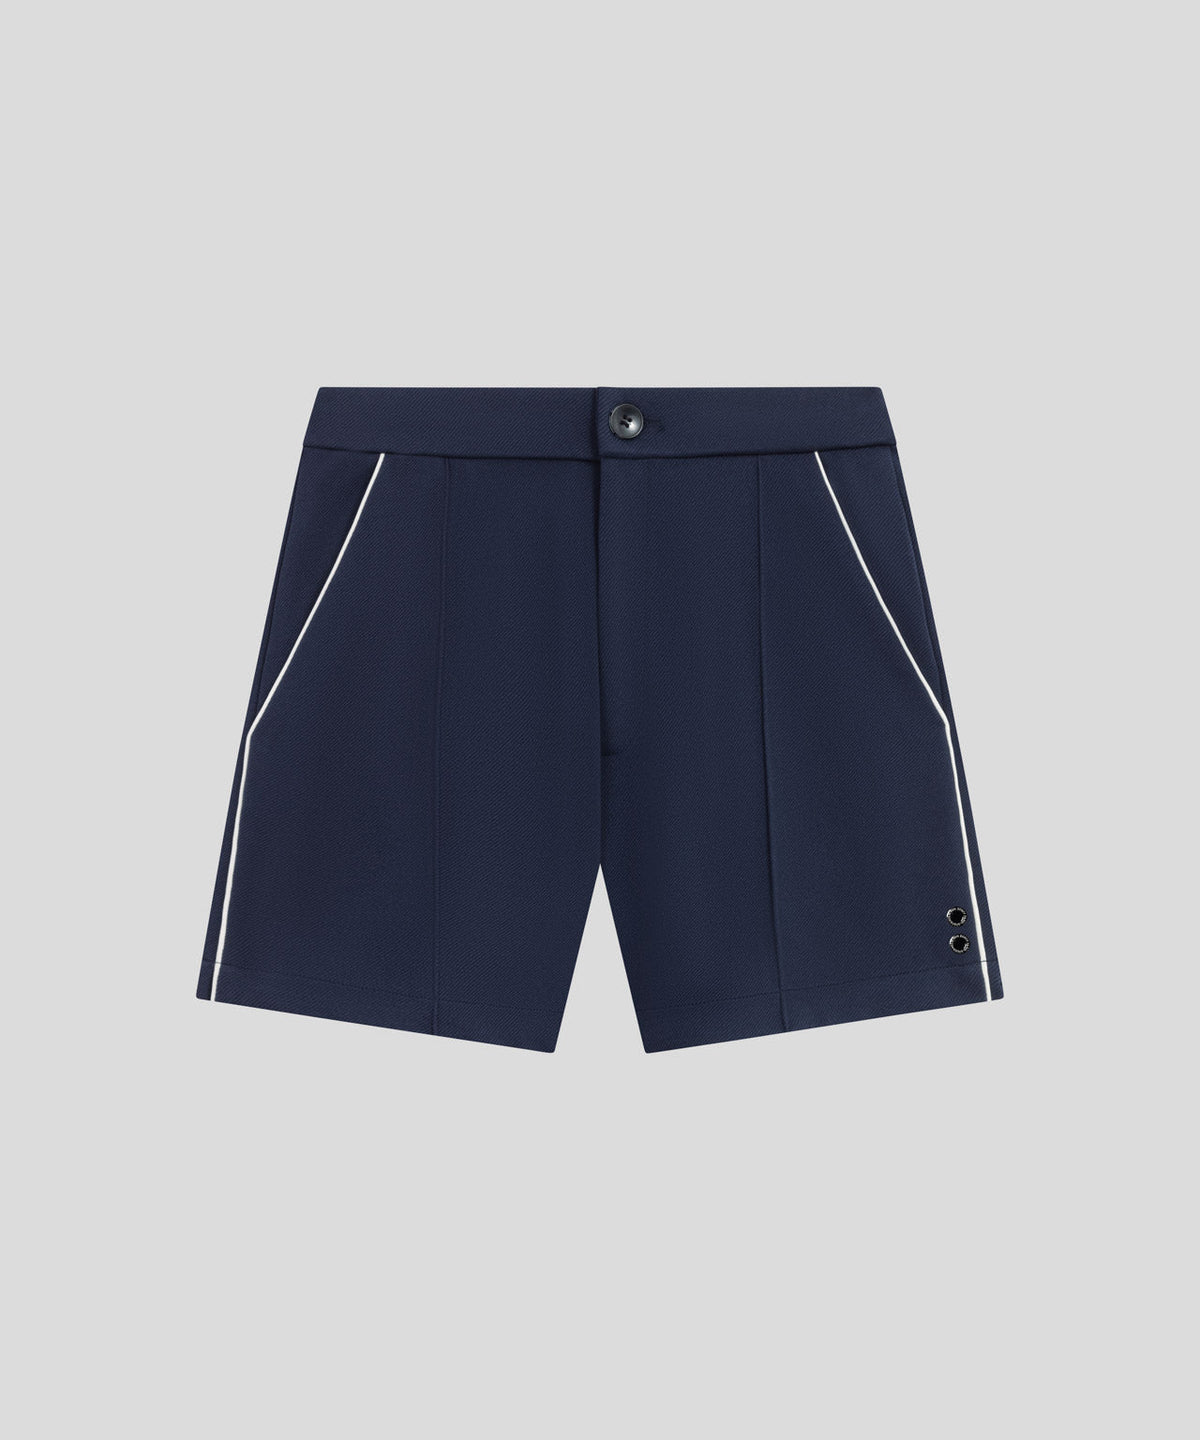 Tennis Shorts w Piping: Navy